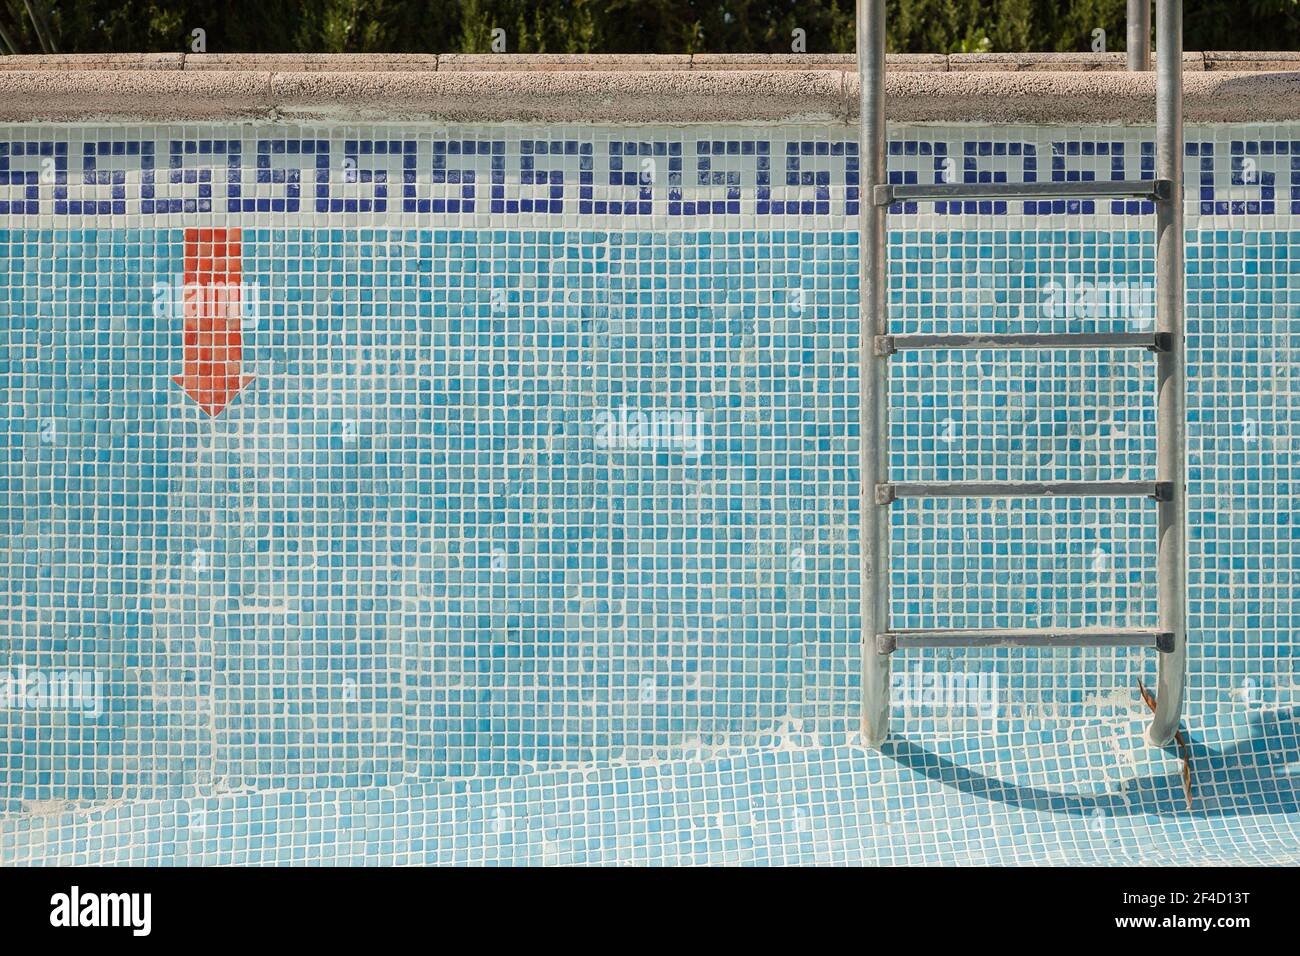 Gefliester Pool ohne Wasser mit einer Leiter und einem roten Pfeil nach unten Warnschild. Strukturierter Hintergrund. Stockfoto